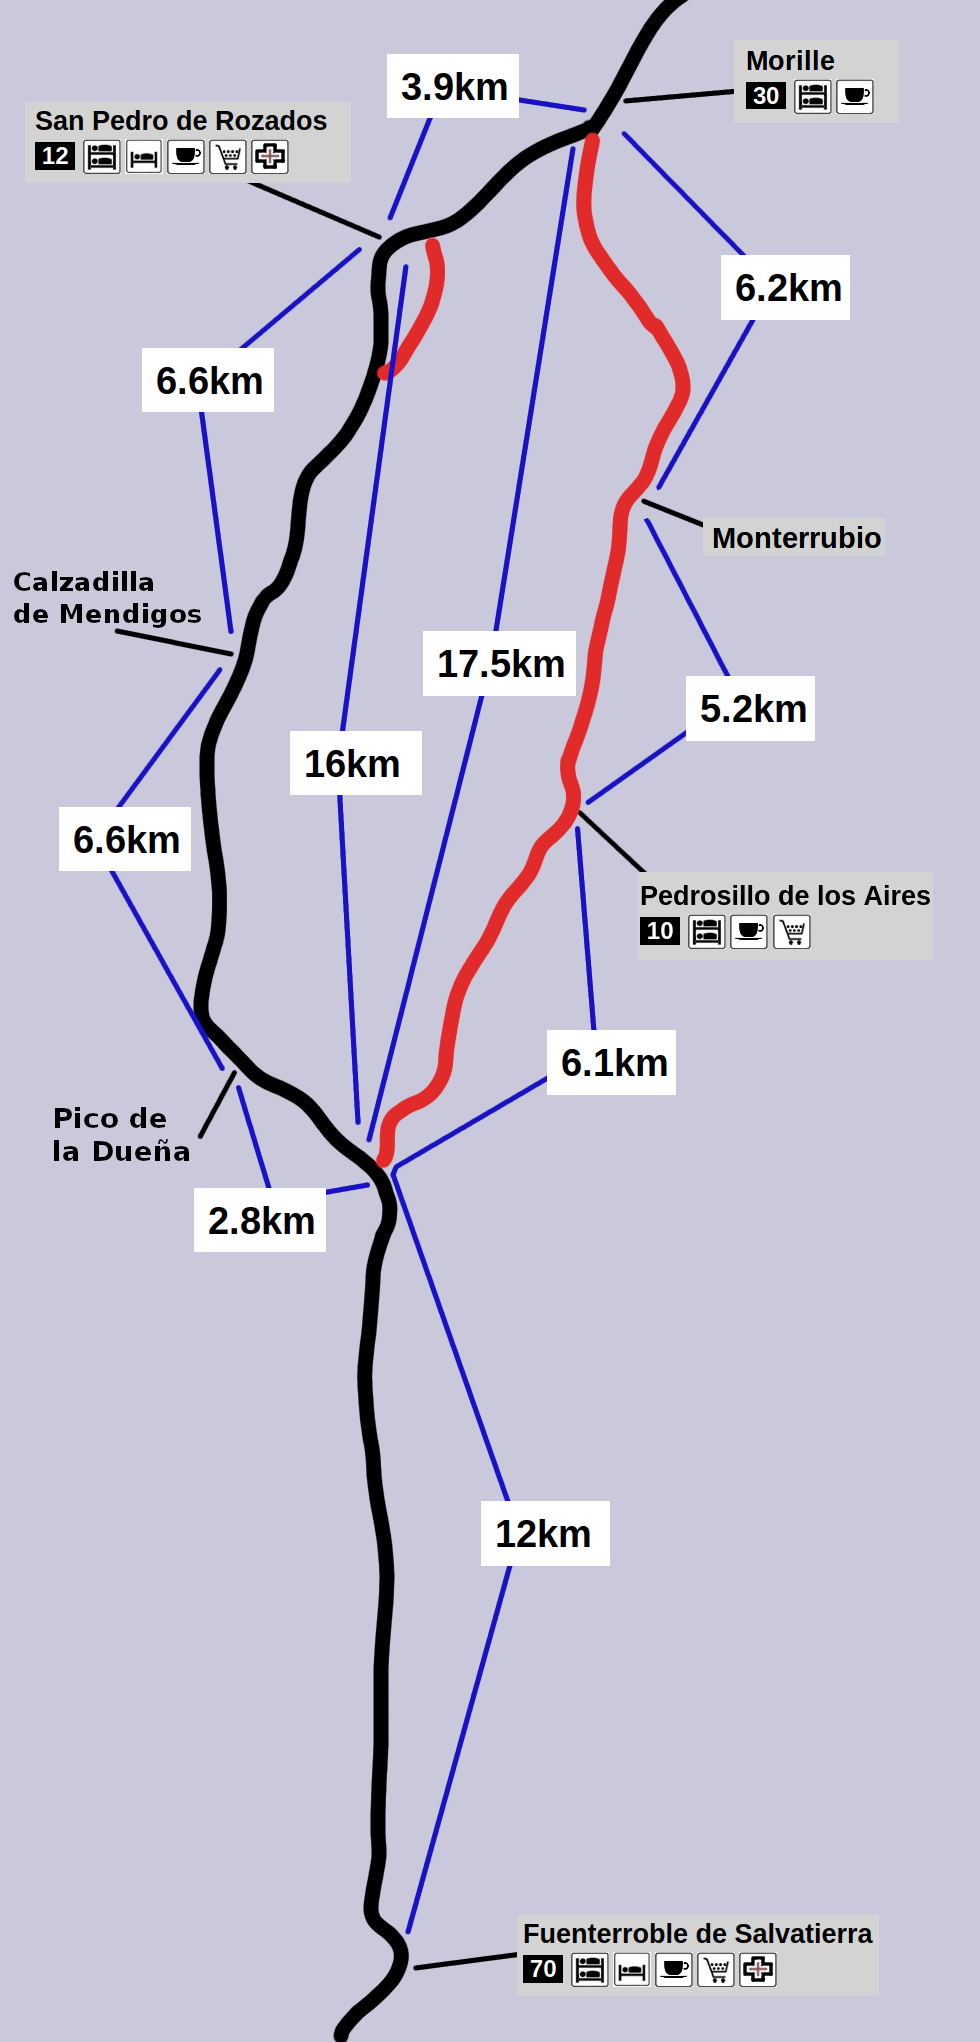 Vía de la Plata - Between Fuenterroble and Morille